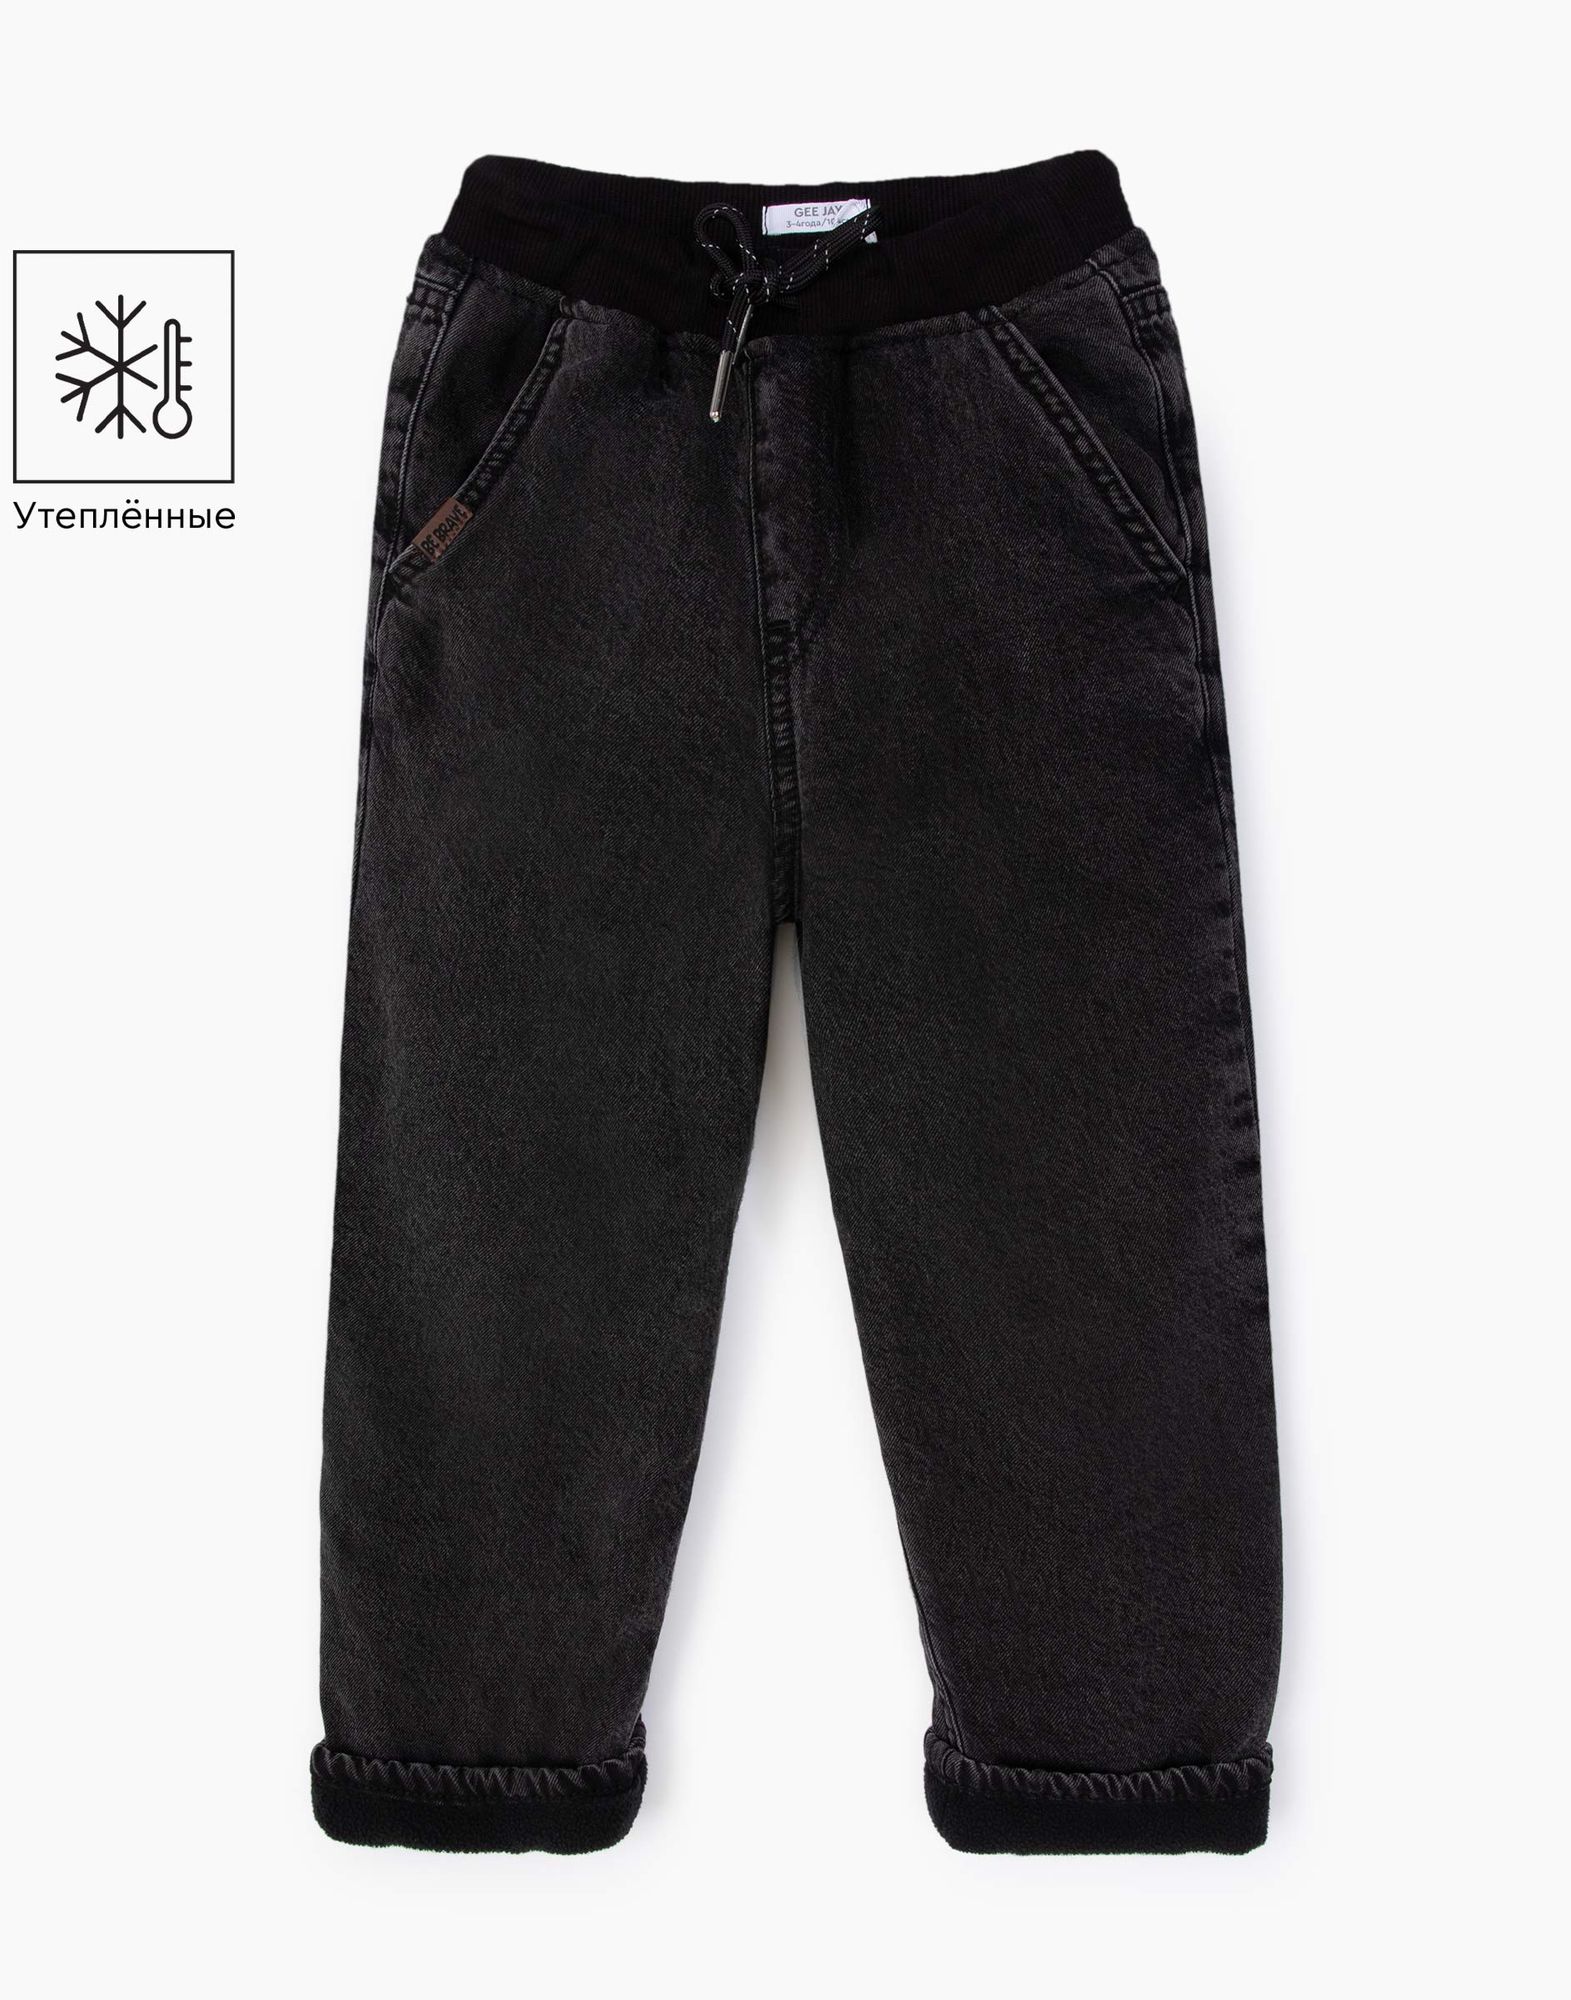 Утеплённые джинсы Loose для мальчика-0